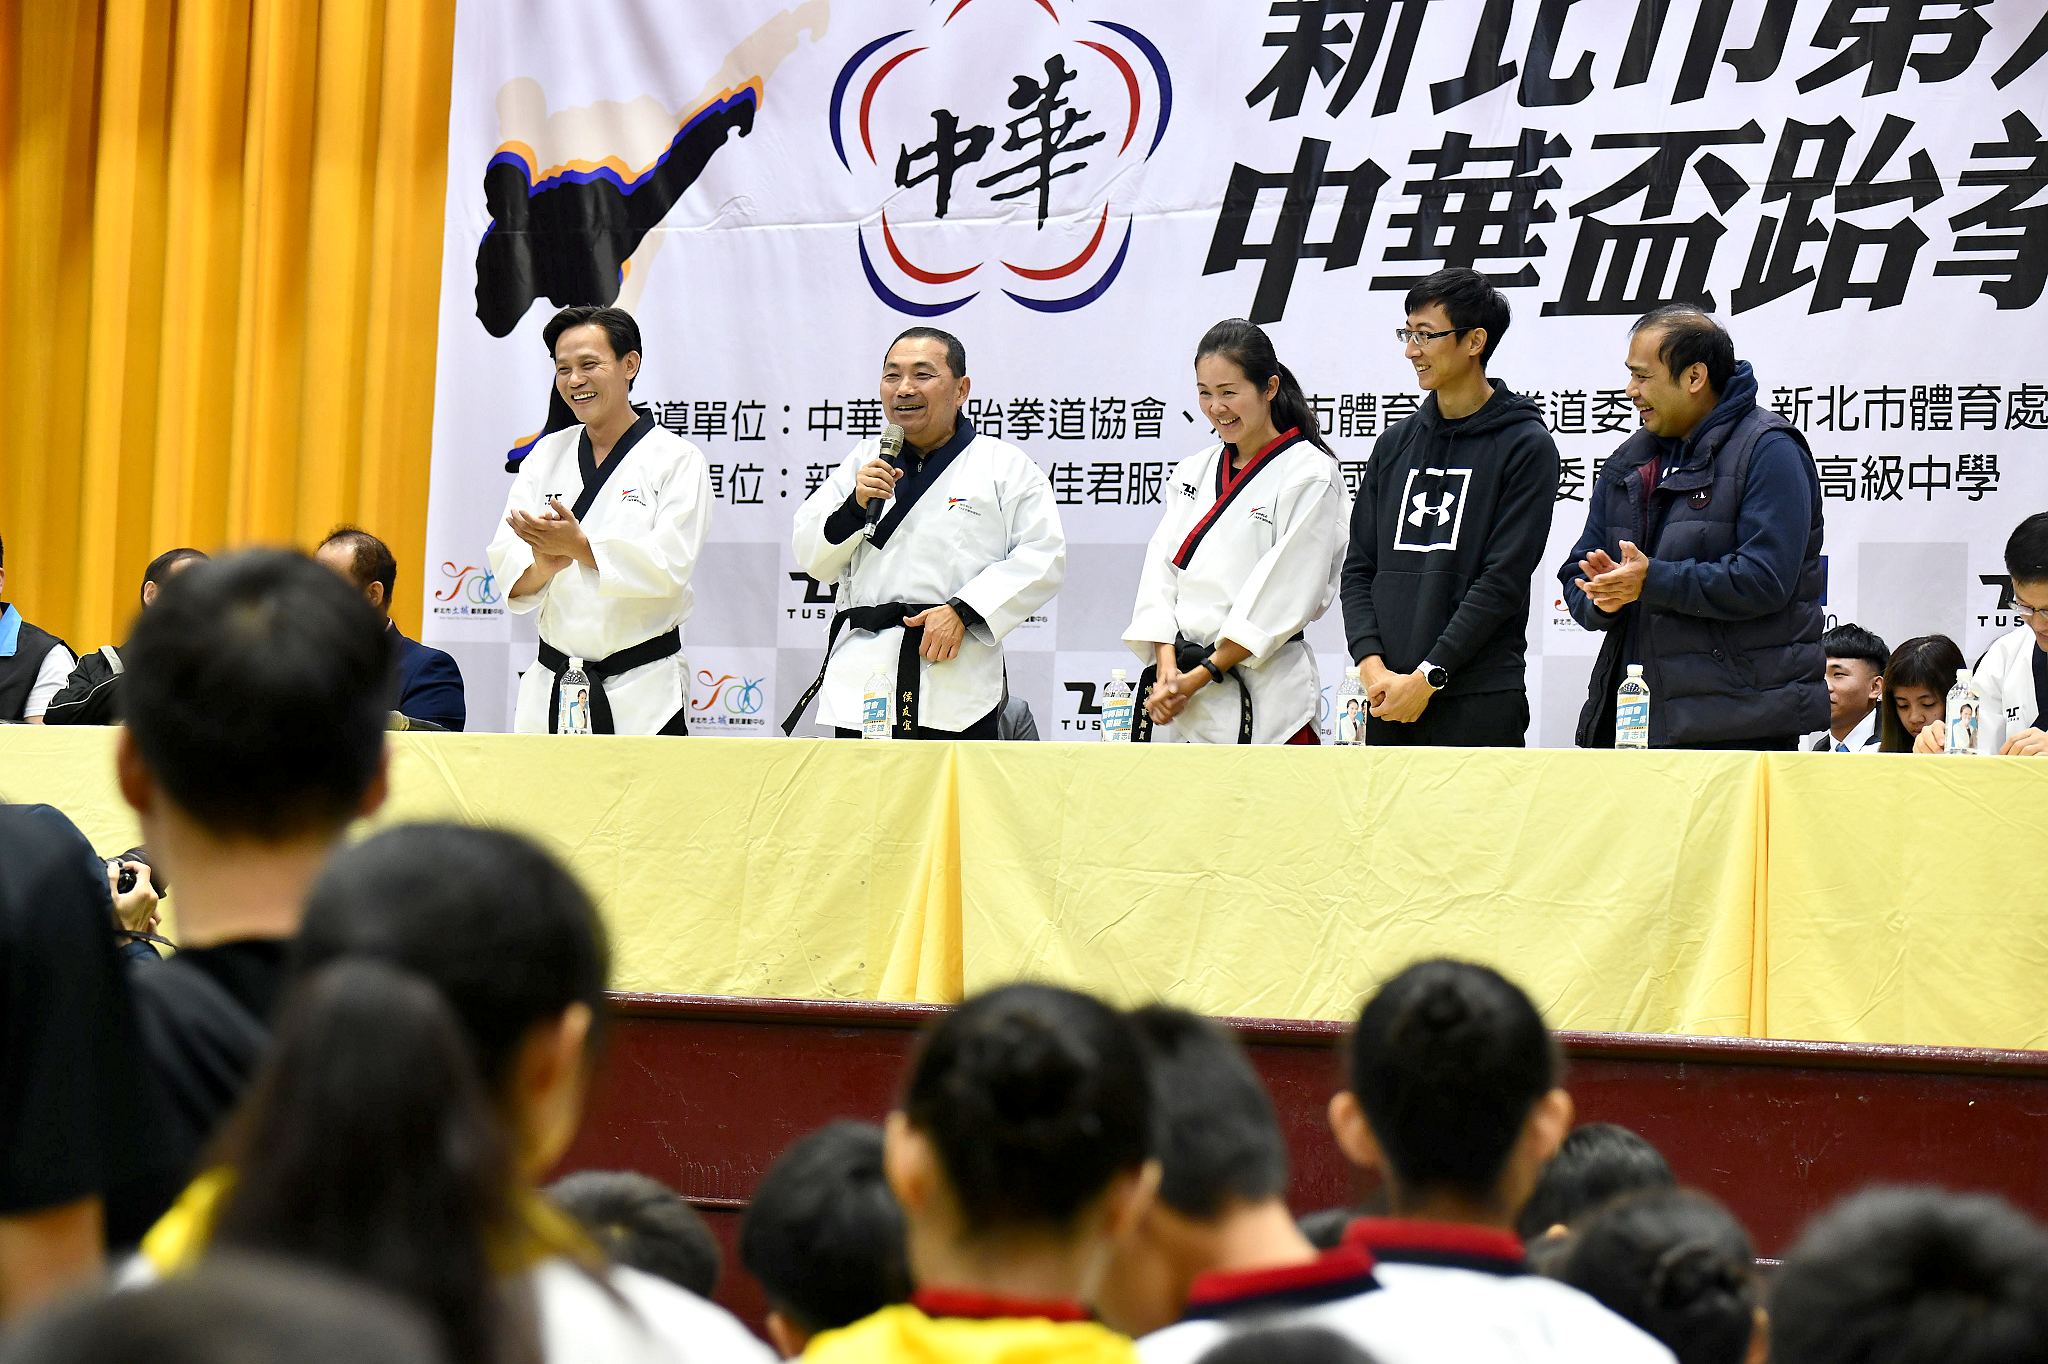 中華盃跆拳道錦標賽 侯友宜及奧運金銀銅牌得主到場鼓勵